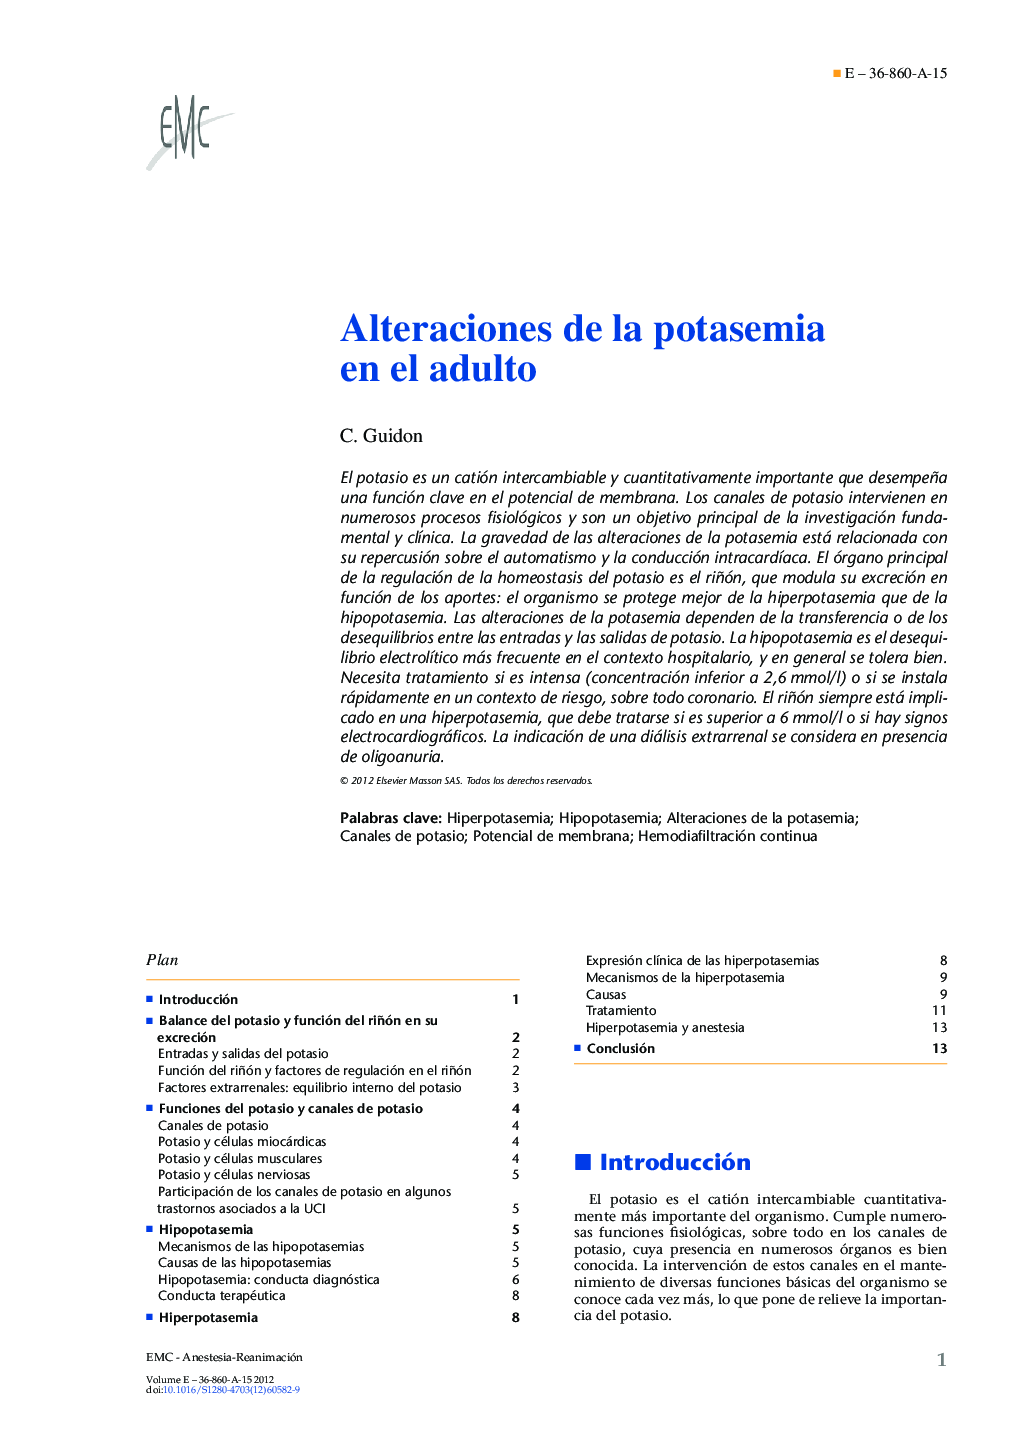 Alteraciones de la potasemia en el adulto